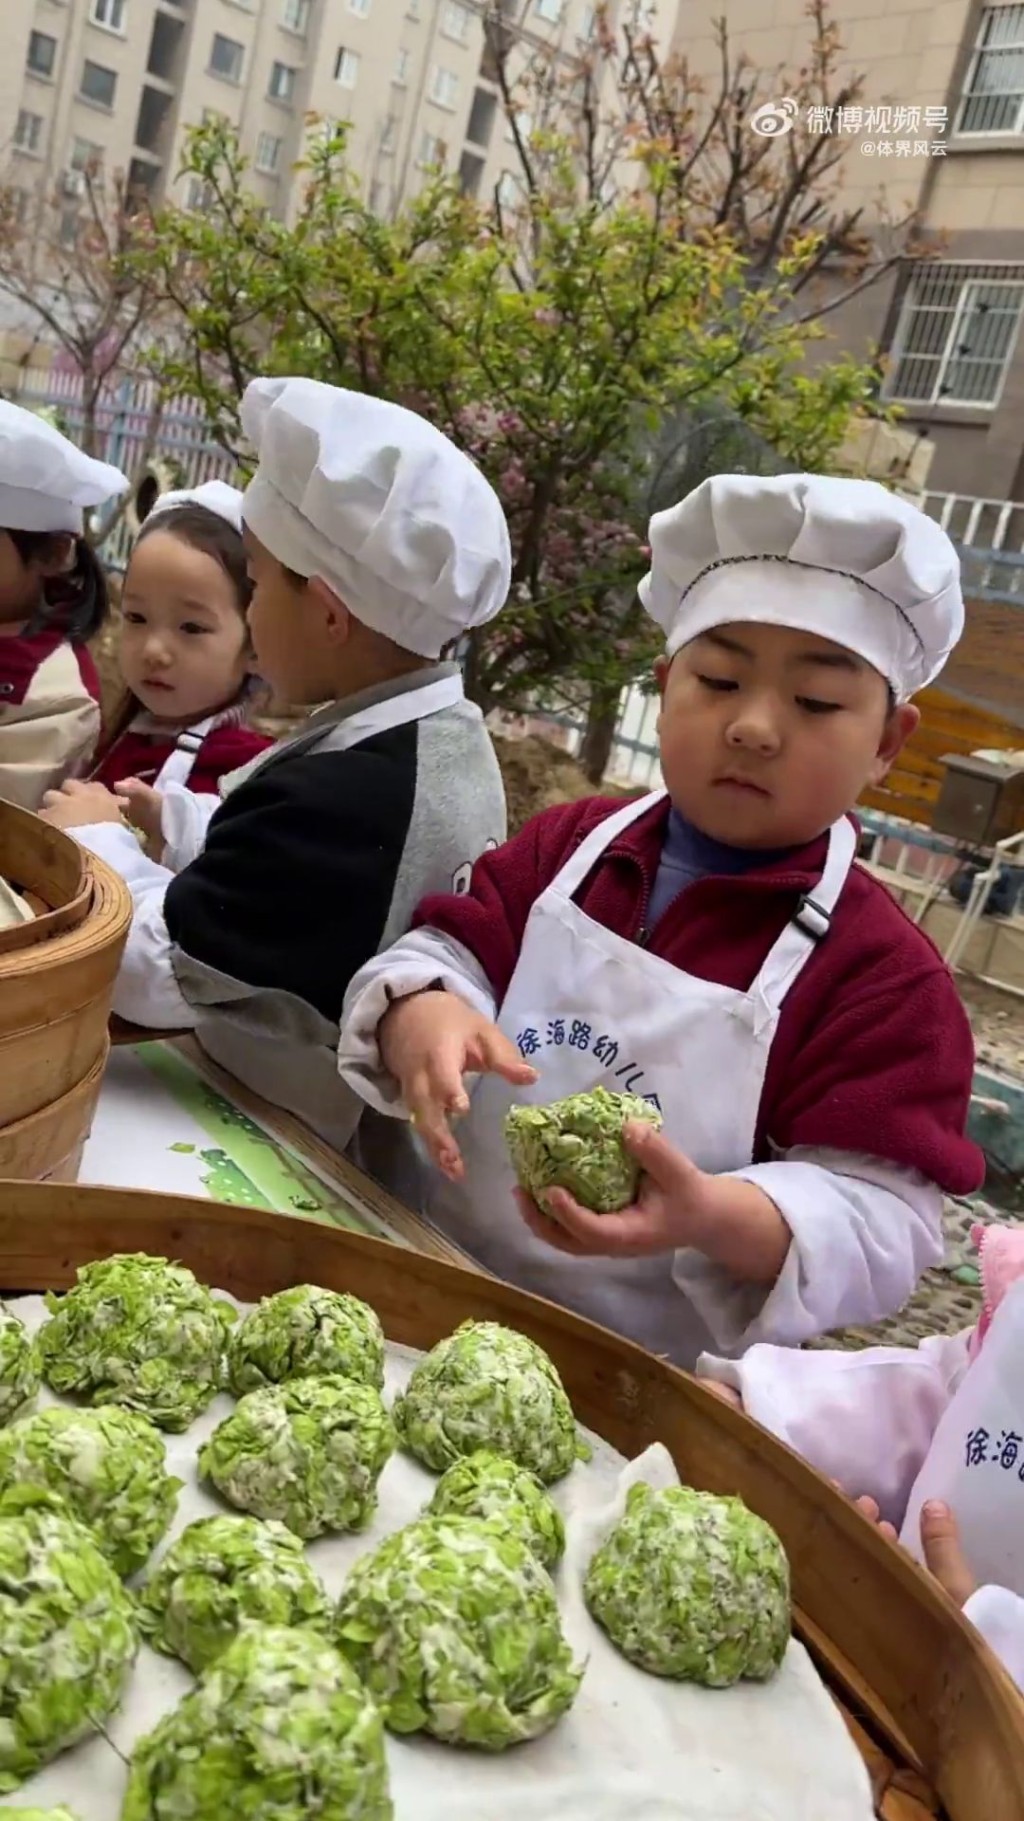 一年四季，徐海路幼儿园都有不同的生活课程。